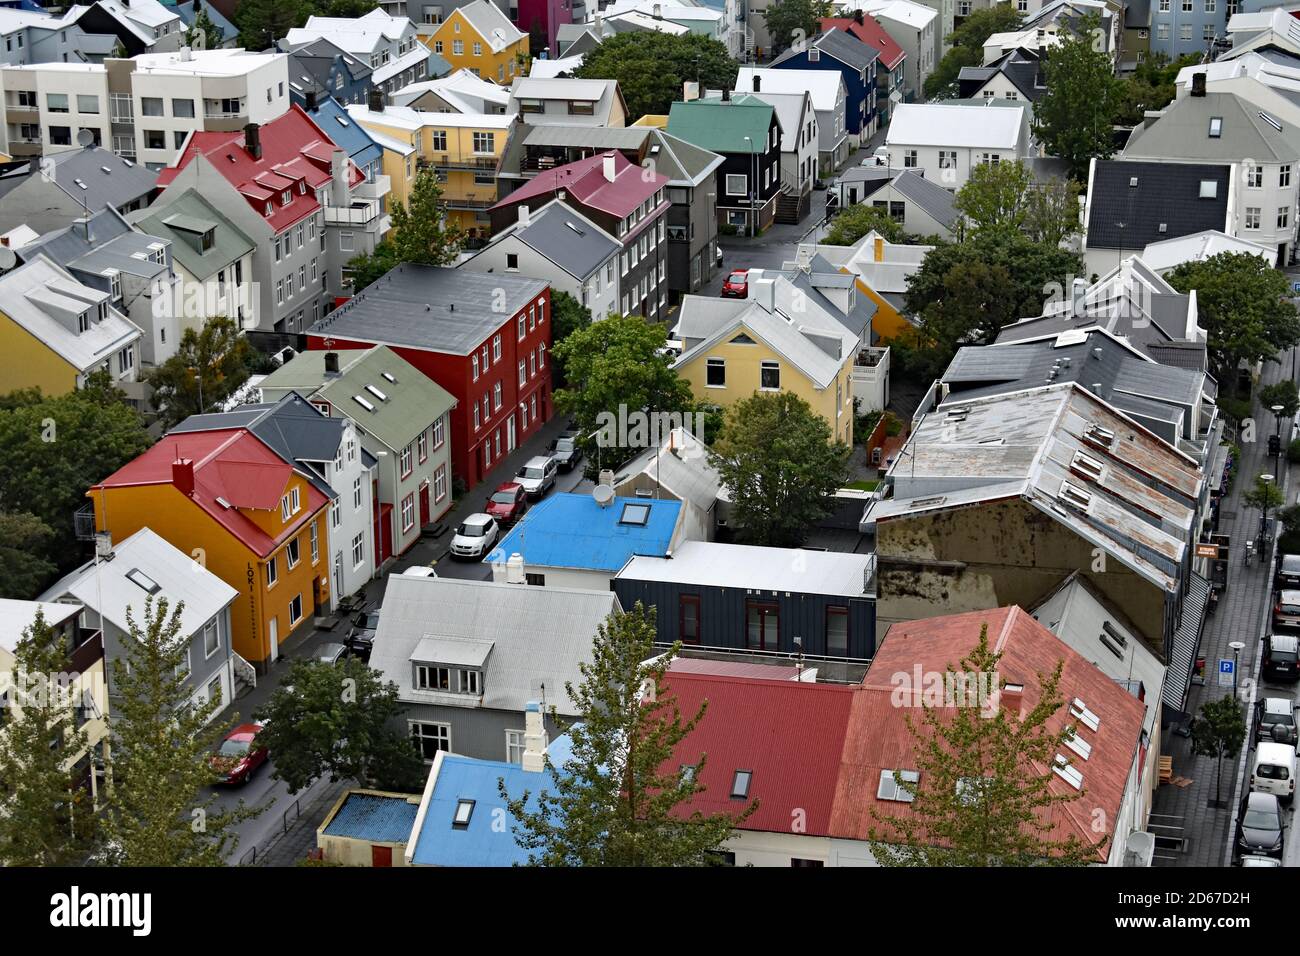 Una vista dalla cima della torre della chiesa di Hallgrimskirkja. File di case dai colori vivaci e auto parcheggiate possono essere viste attraverso la città di Reykjavik, Islanda. Foto Stock